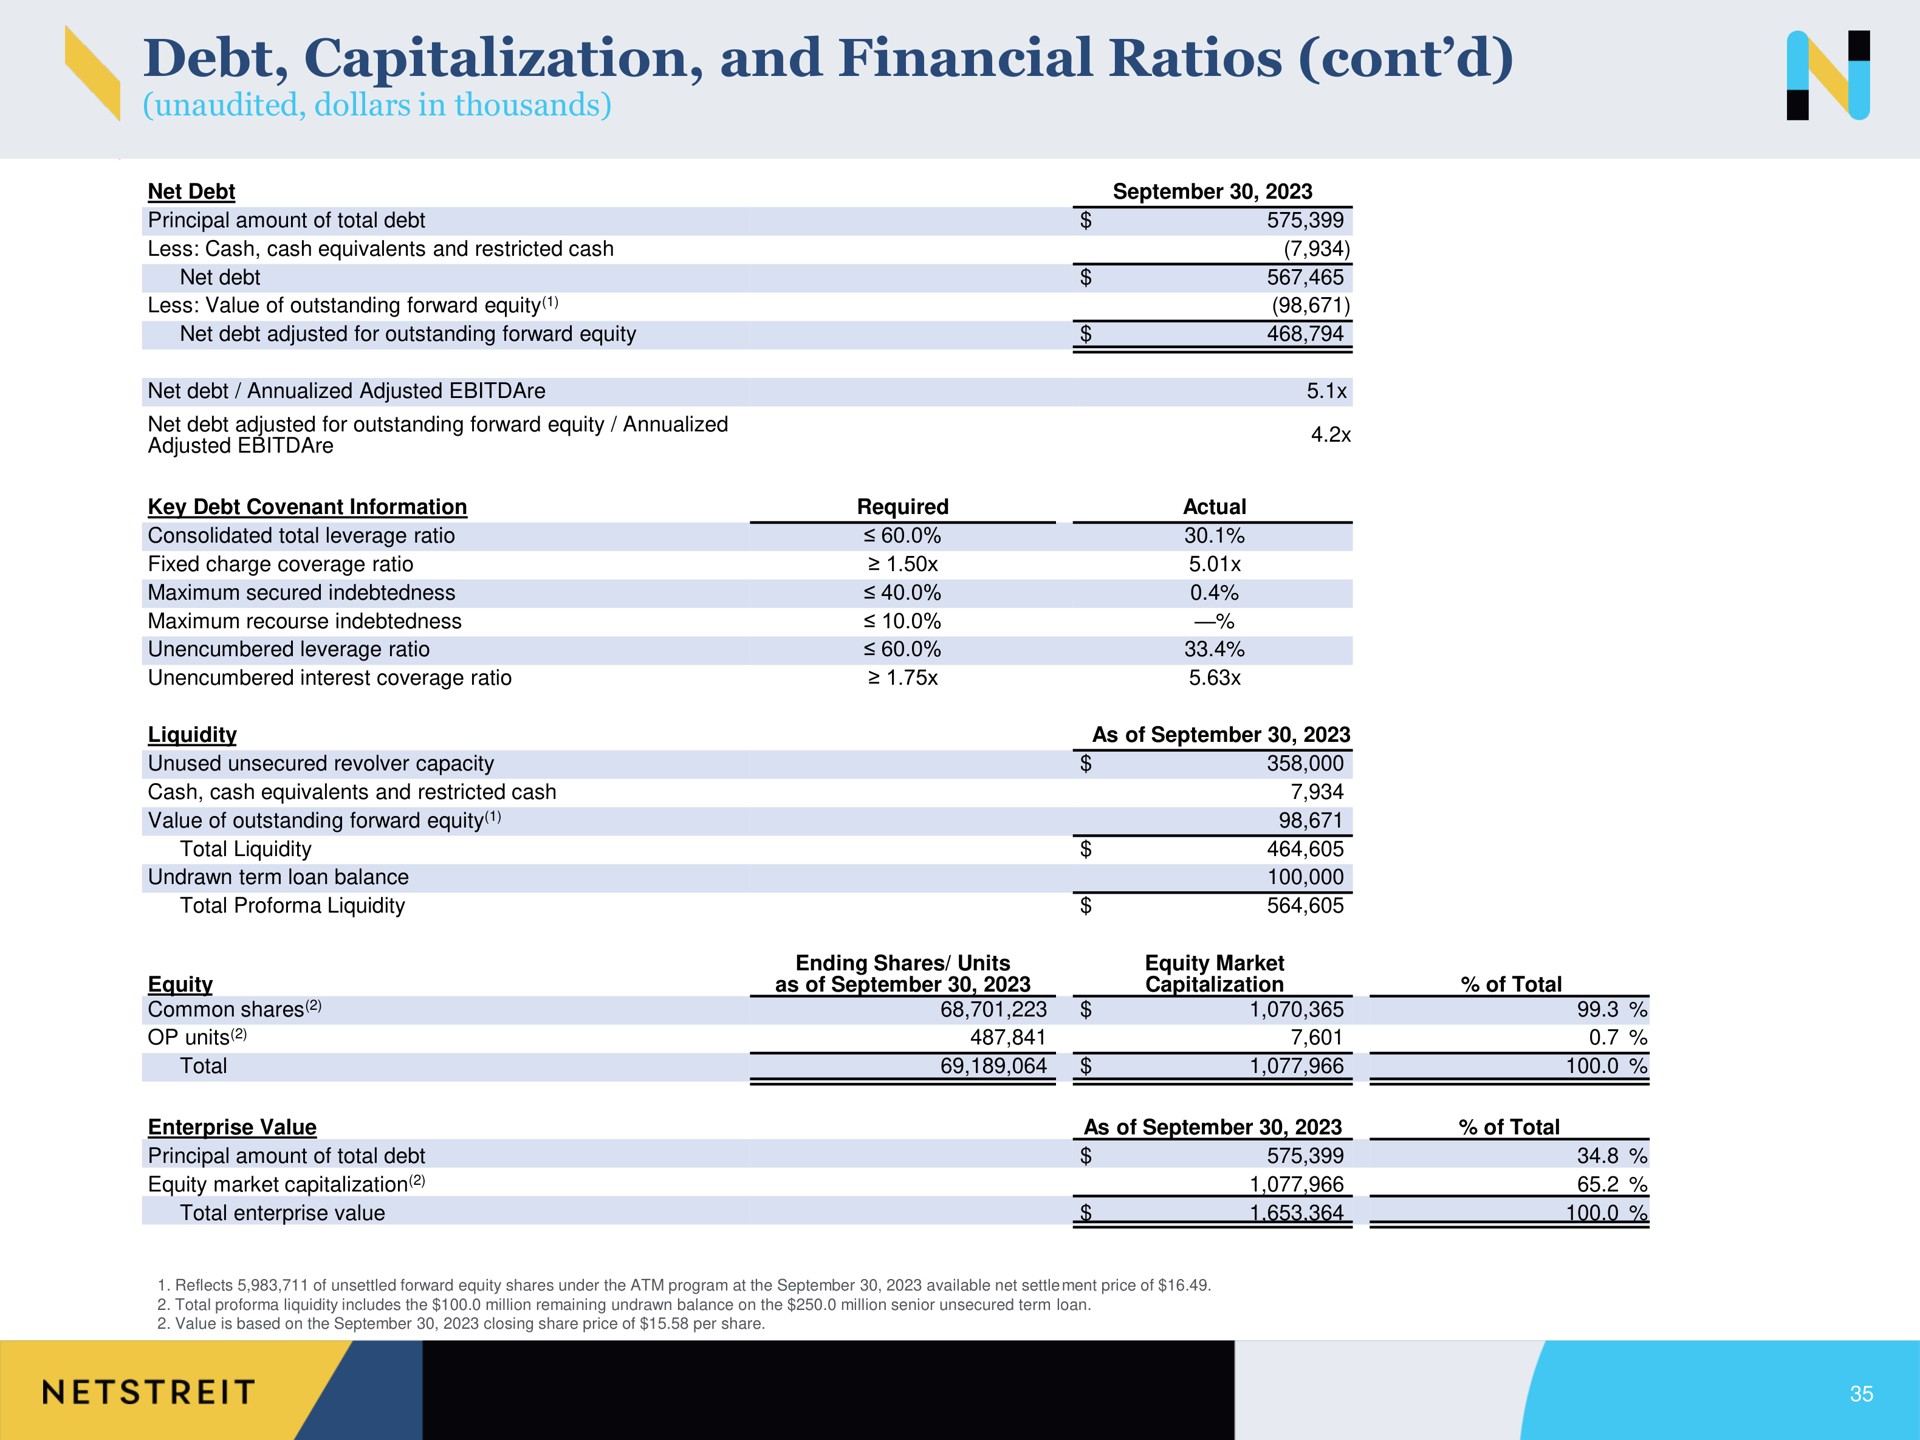 debt capitalization and financial ratios | Netstreit